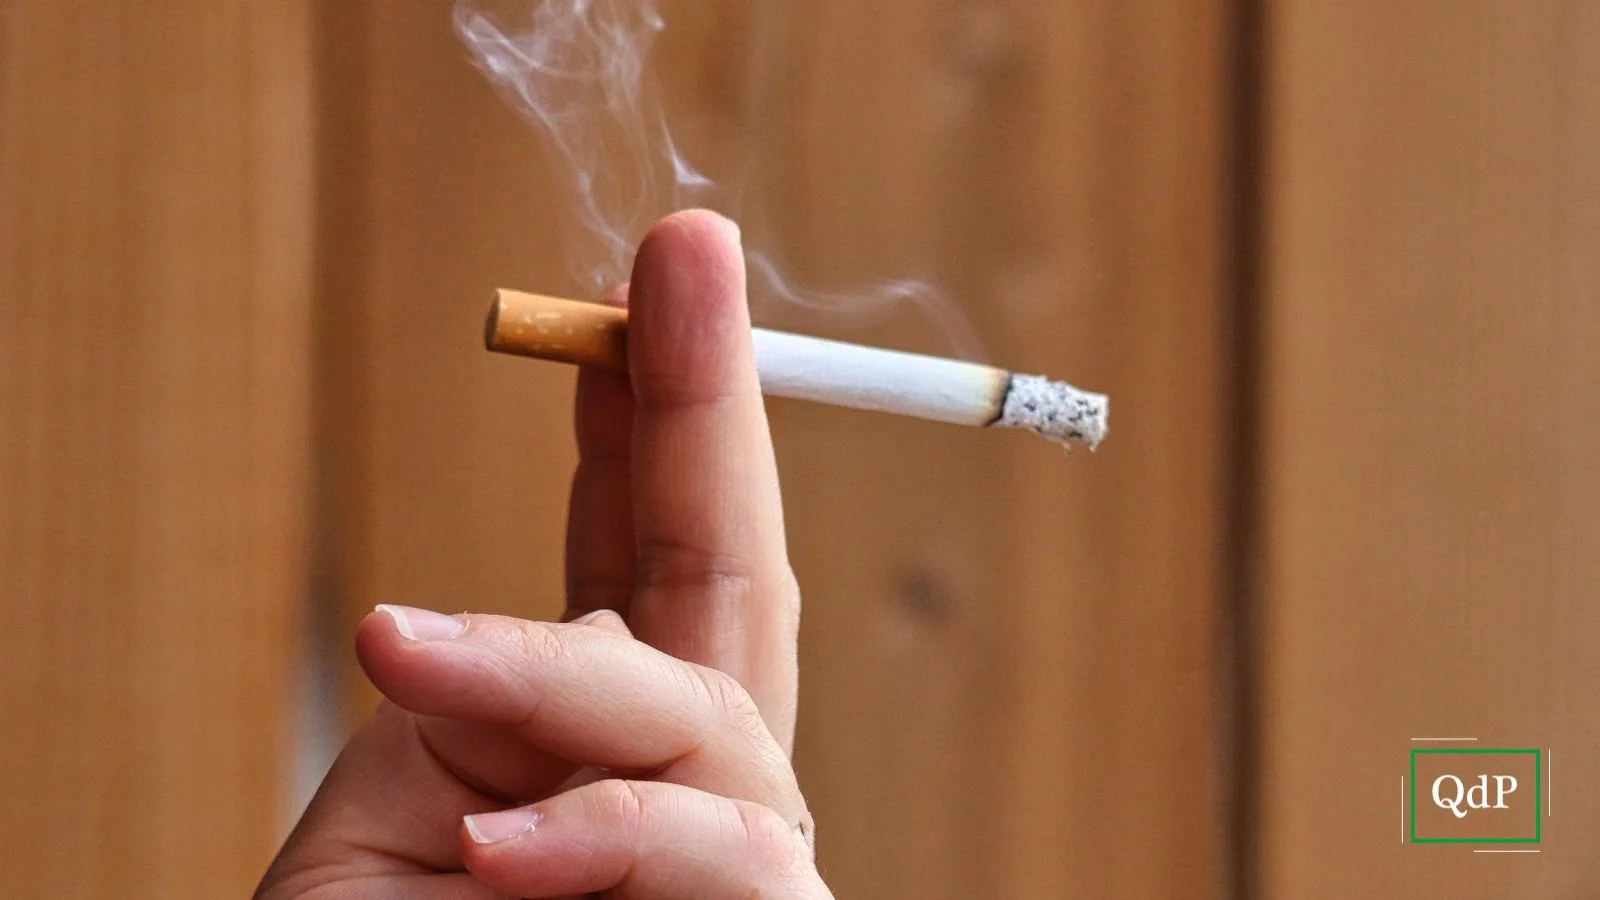 Giornata mondiale senza tabacco, nella Marca il fumo causa il 30% delle morti premature